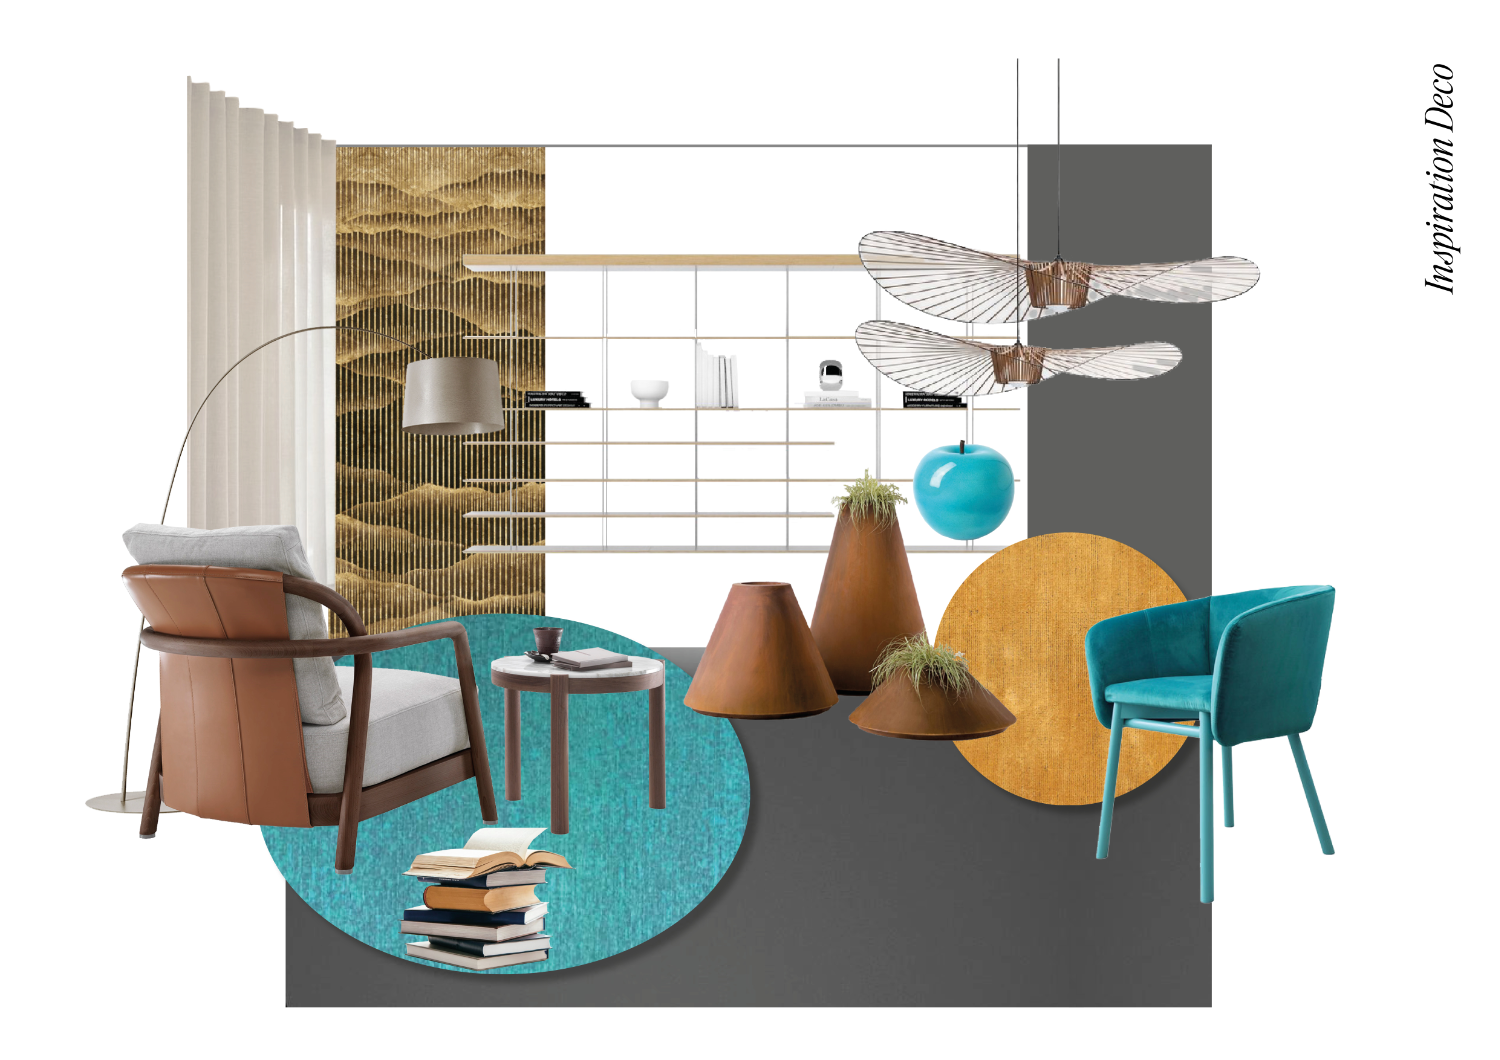 Sélection de meubles, luminaires et accessoires suggérés lors d'un conseil en décoration d'intérieur par le studio Elles Interior Design.